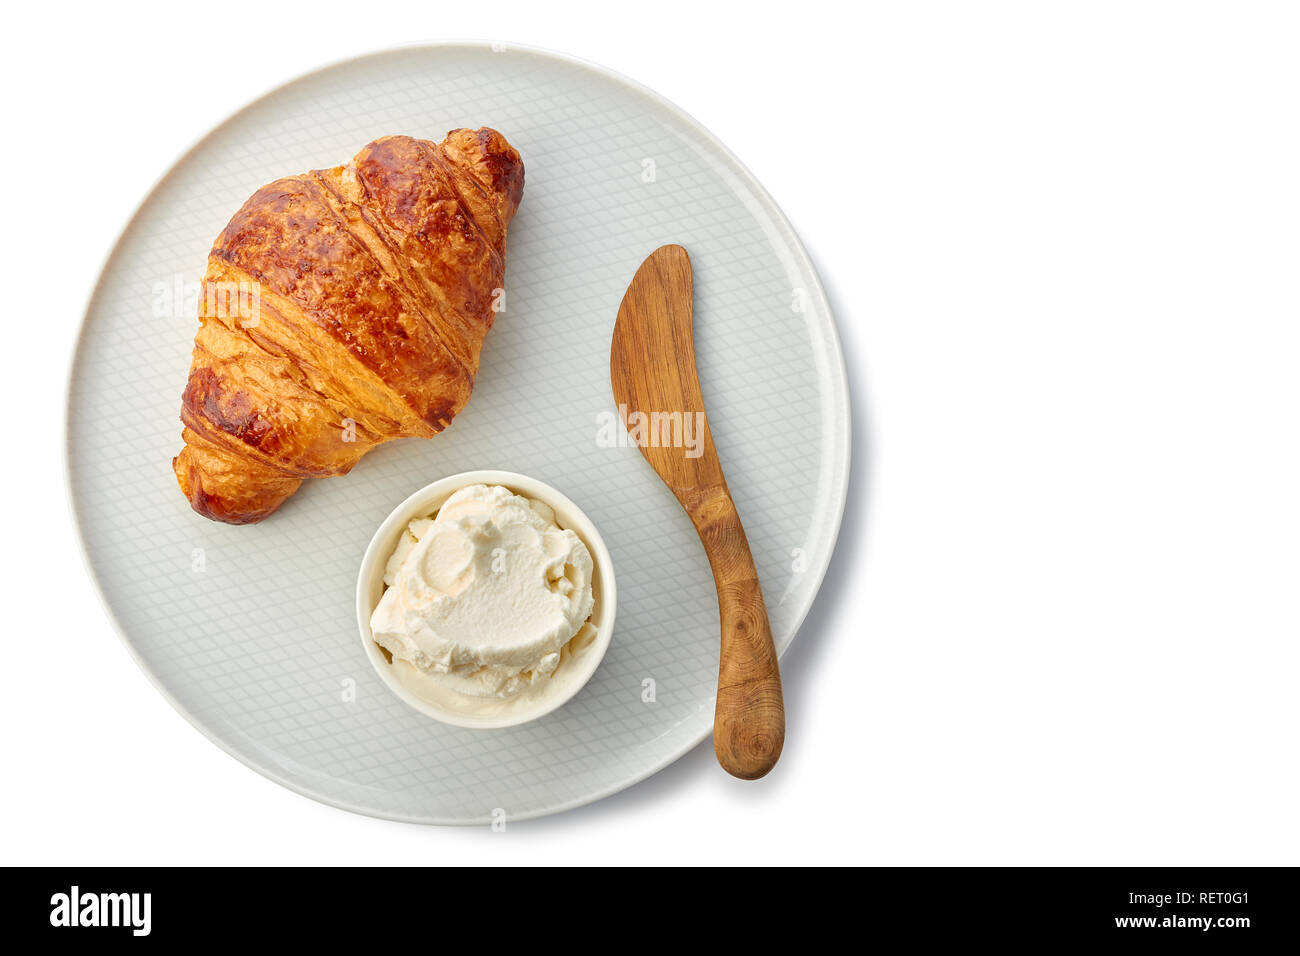 Mit frischen Croissants und Rahm Käse Platte auf Weiß Stockfoto